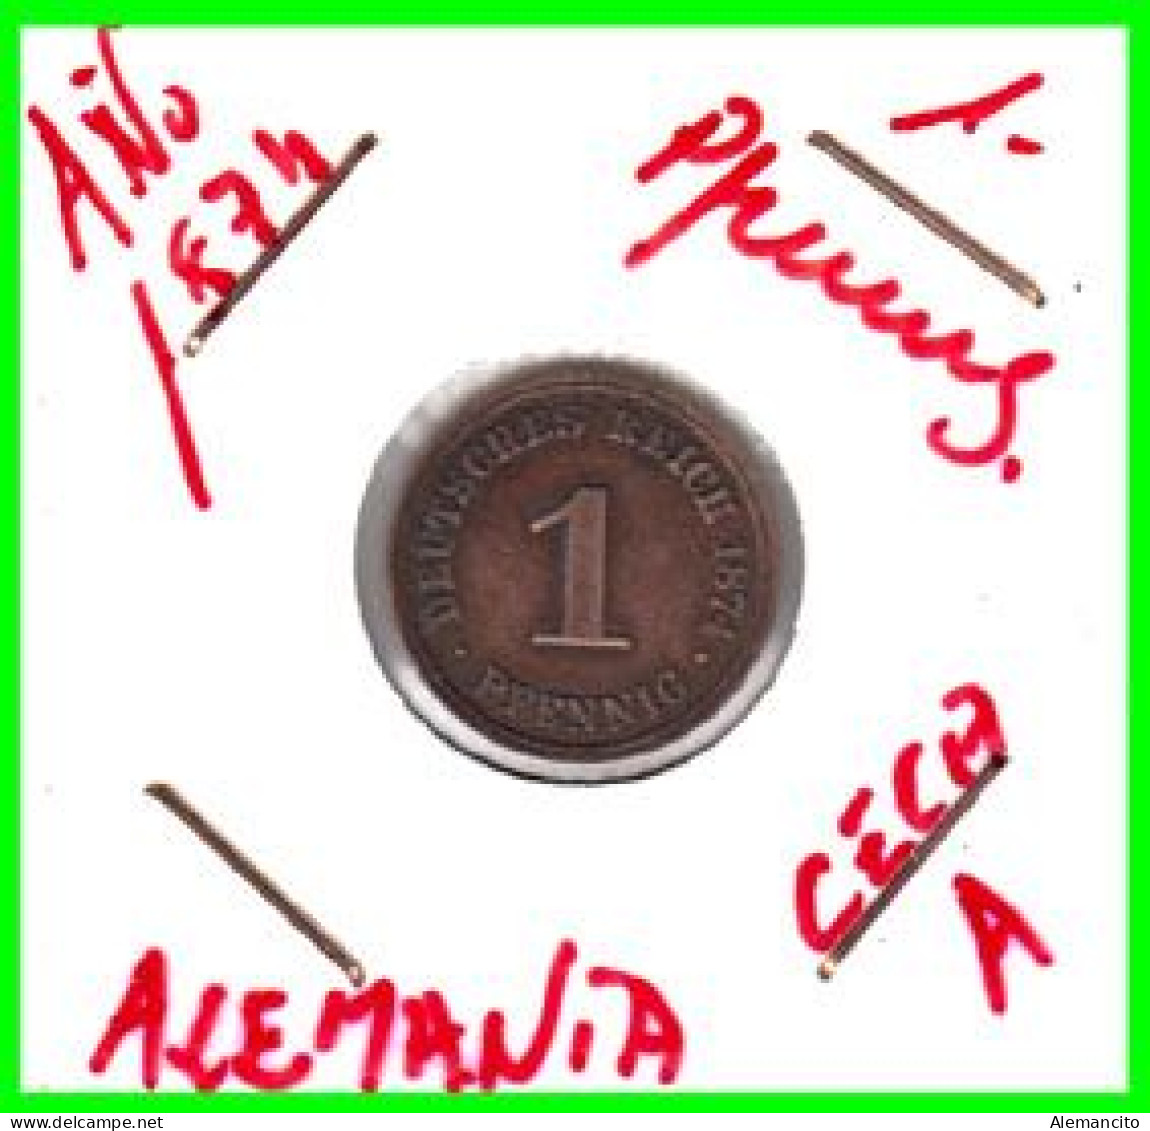 ALEMANIA – GERMANY - IMPERIO MONEDA DE COBRE DIAMETRO 17.5 Mm. DEL AÑO 1874 – CECA-A - KM-1  GOBERNANTE: GUILLERMO I - 1 Pfennig